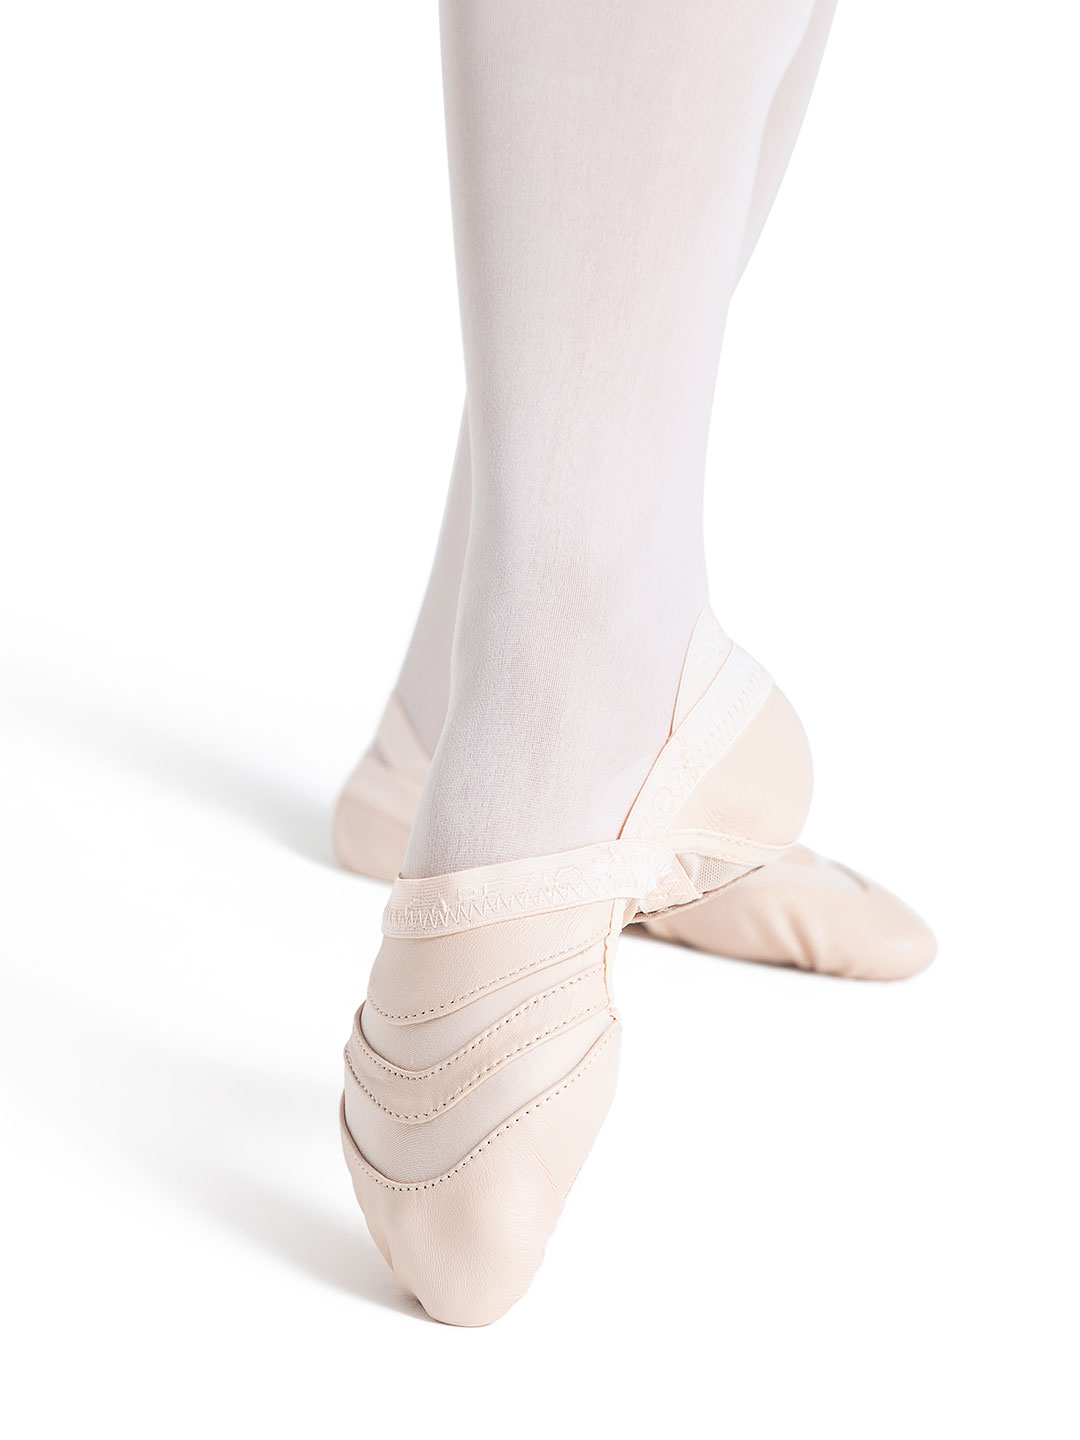 Capezio Women's Freeform Ballet Shoe